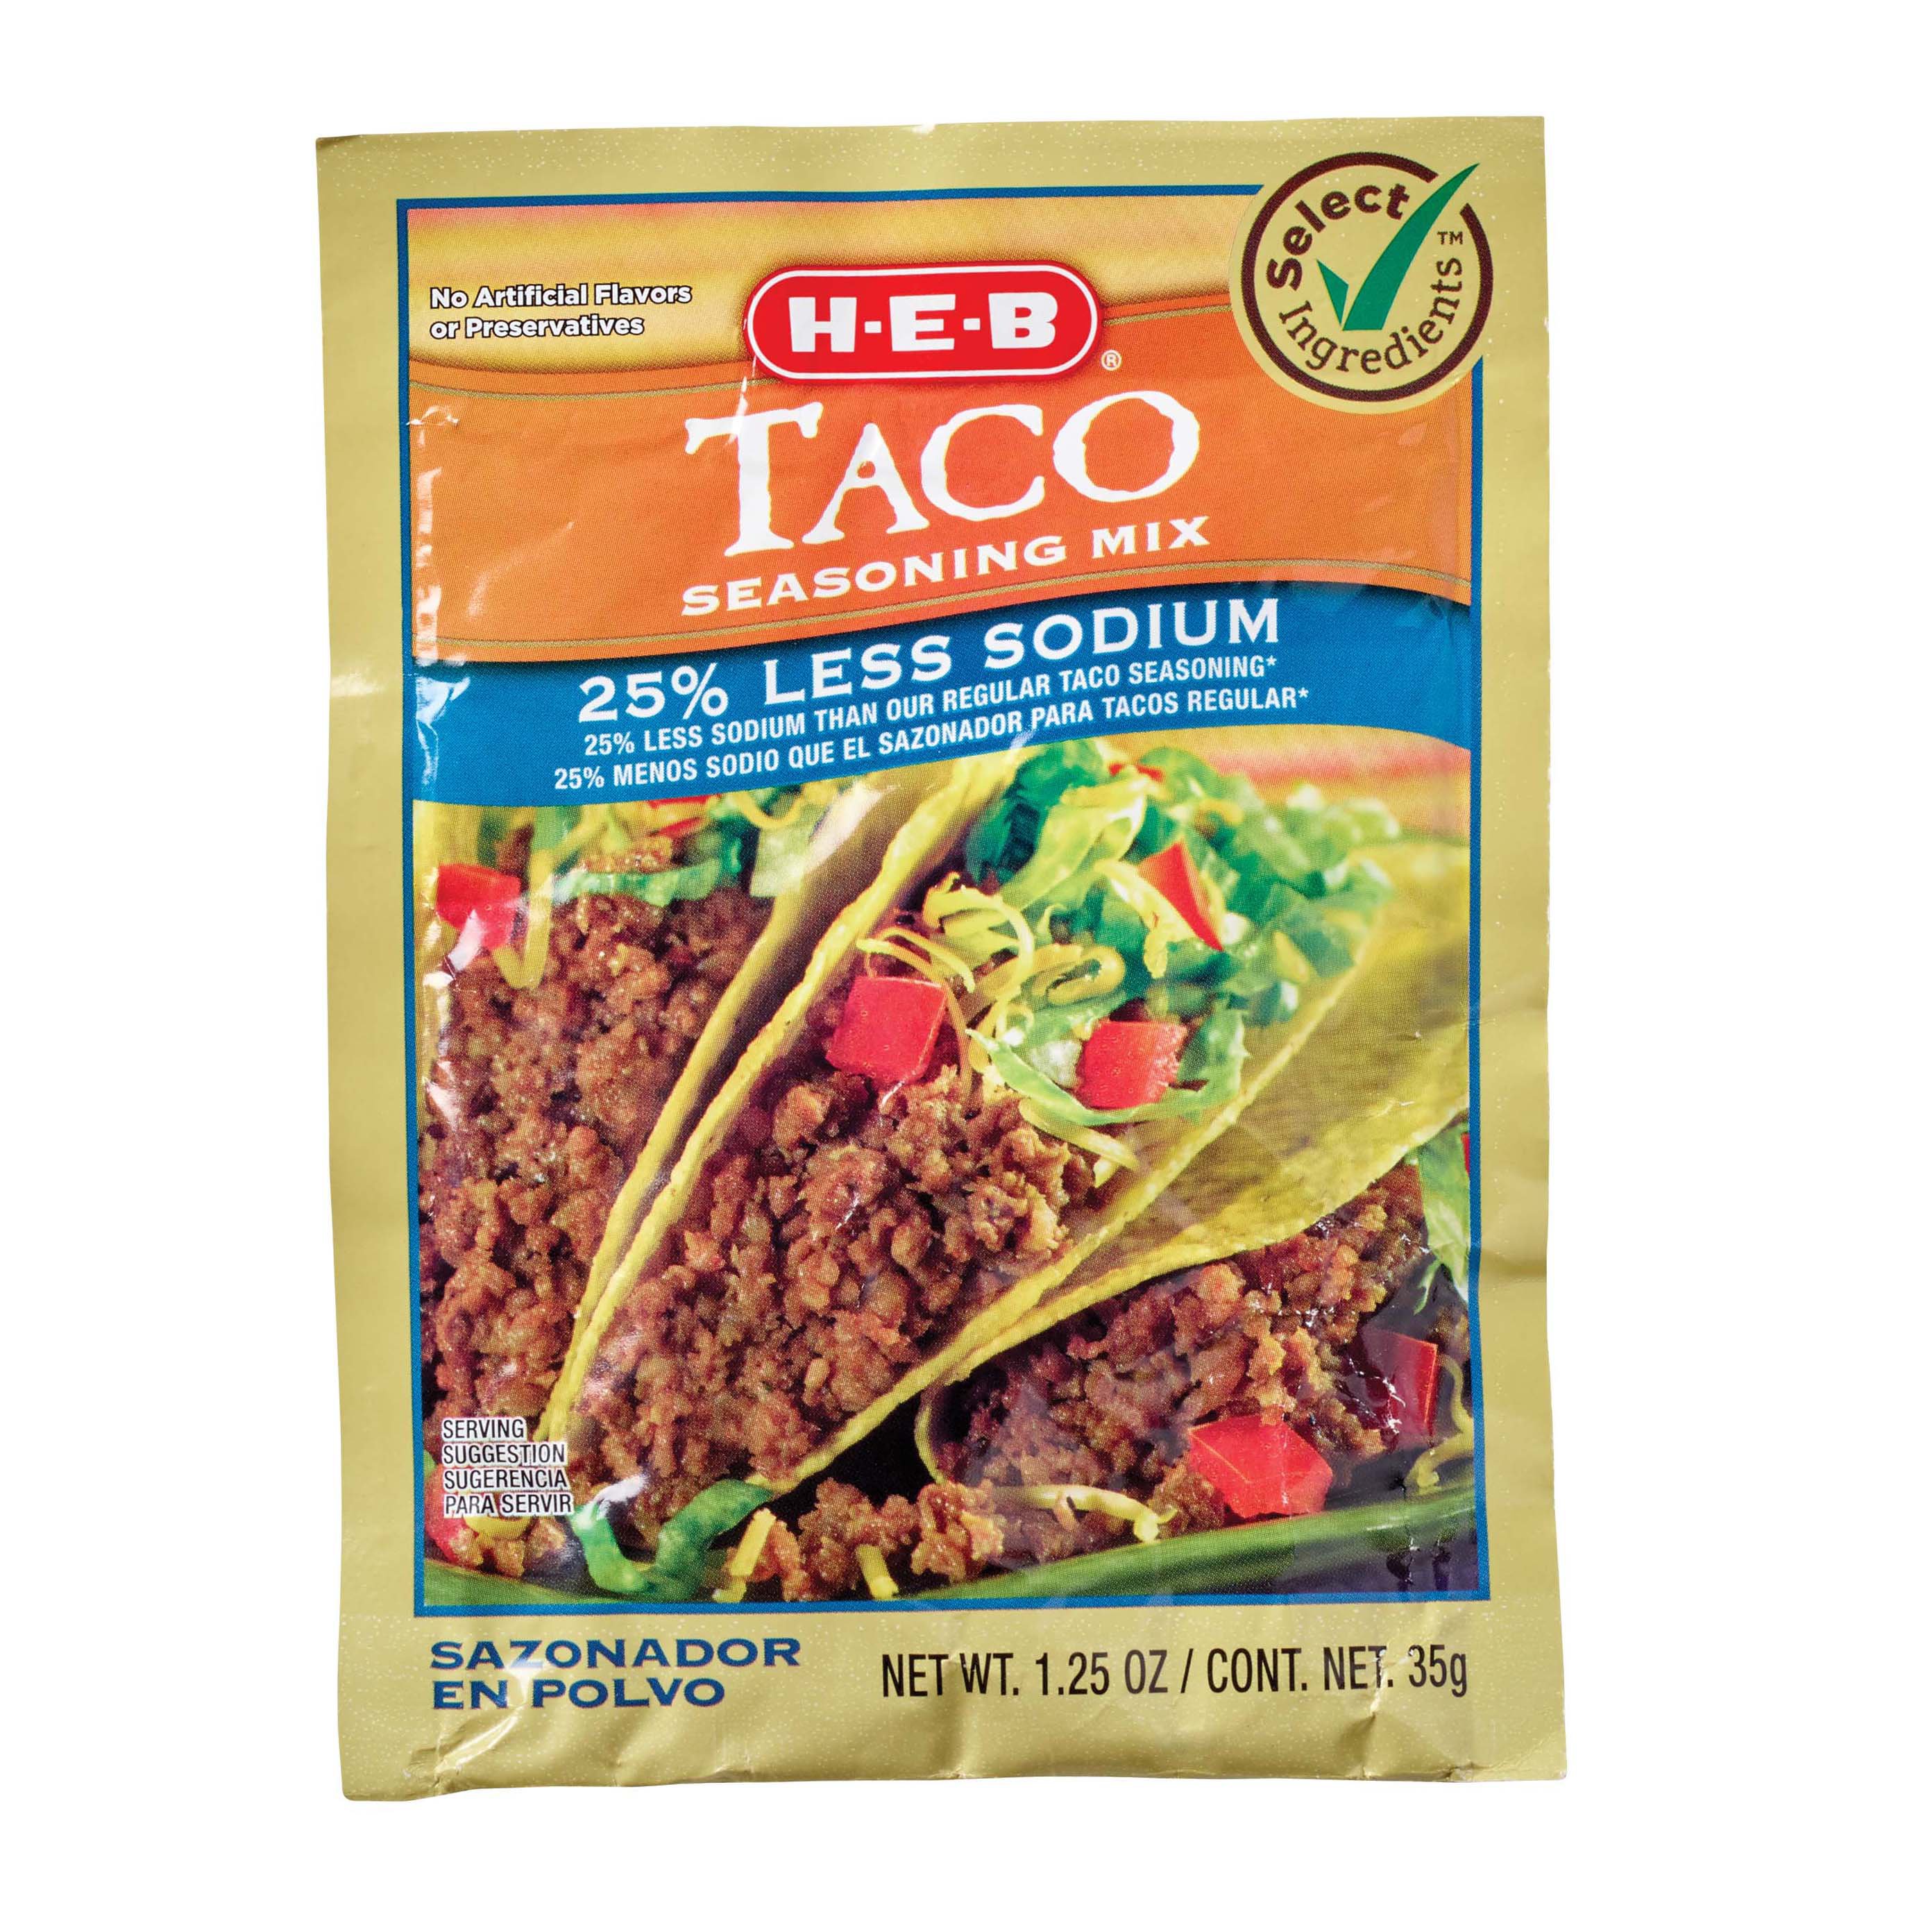 Old El Paso 25% Less Sodium Taco Seasoning 1oz